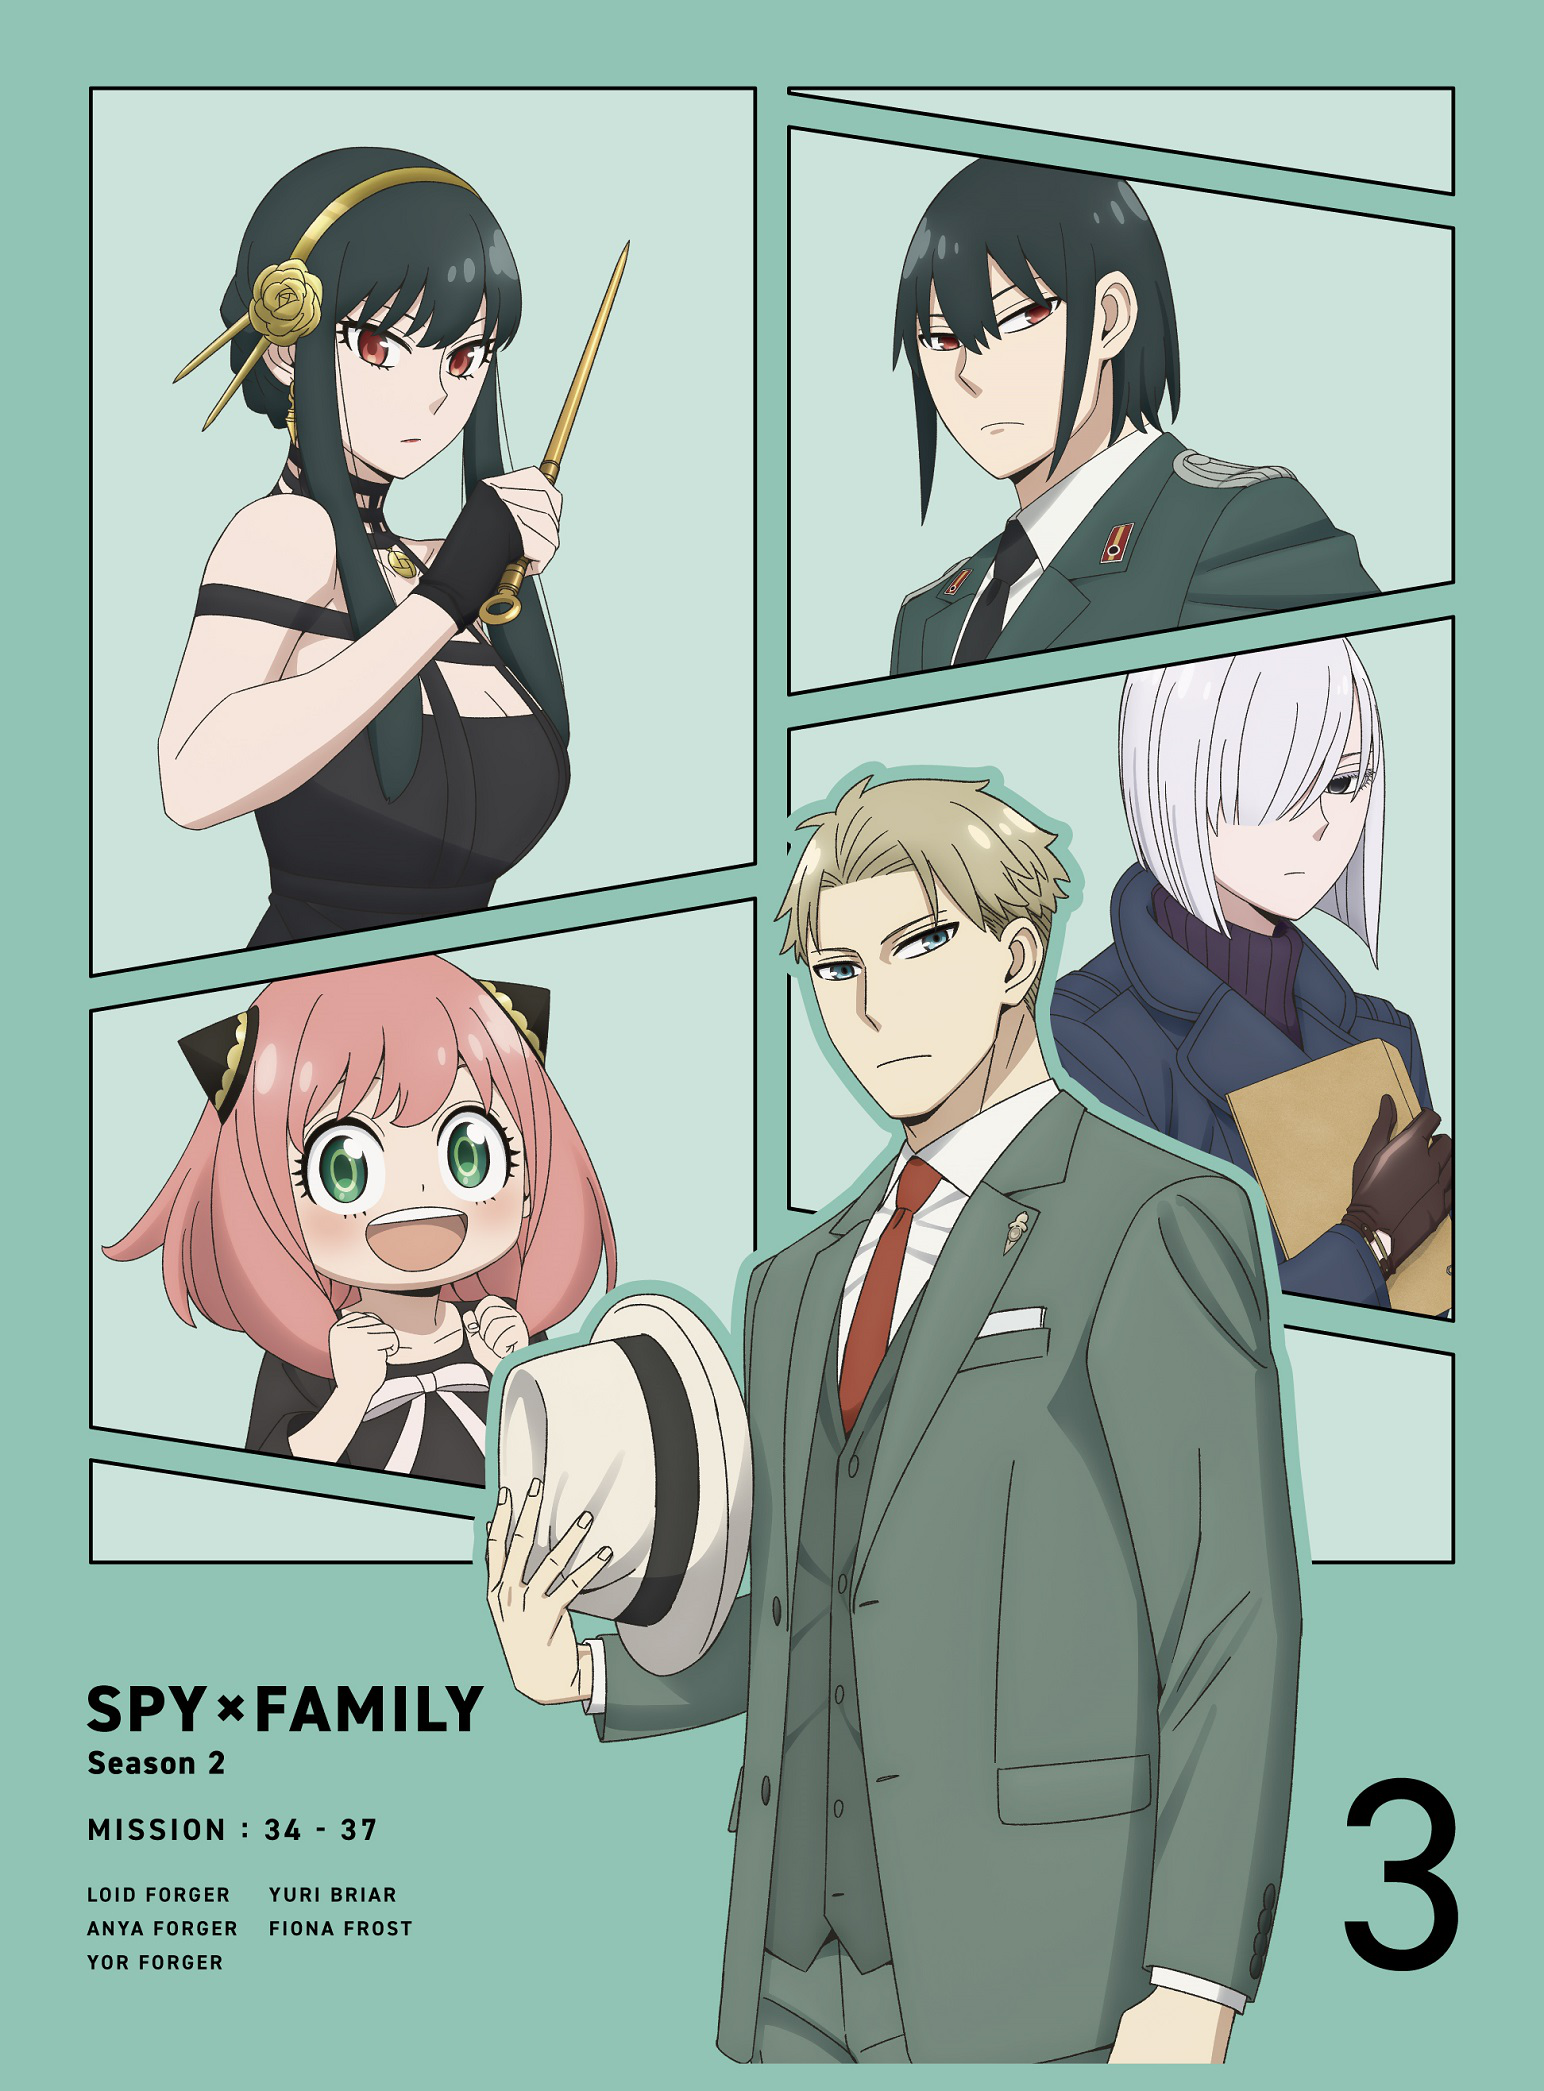 Season 2 Blu-ray & DVD Volume 3 | Spy x Family Wiki | Fandom